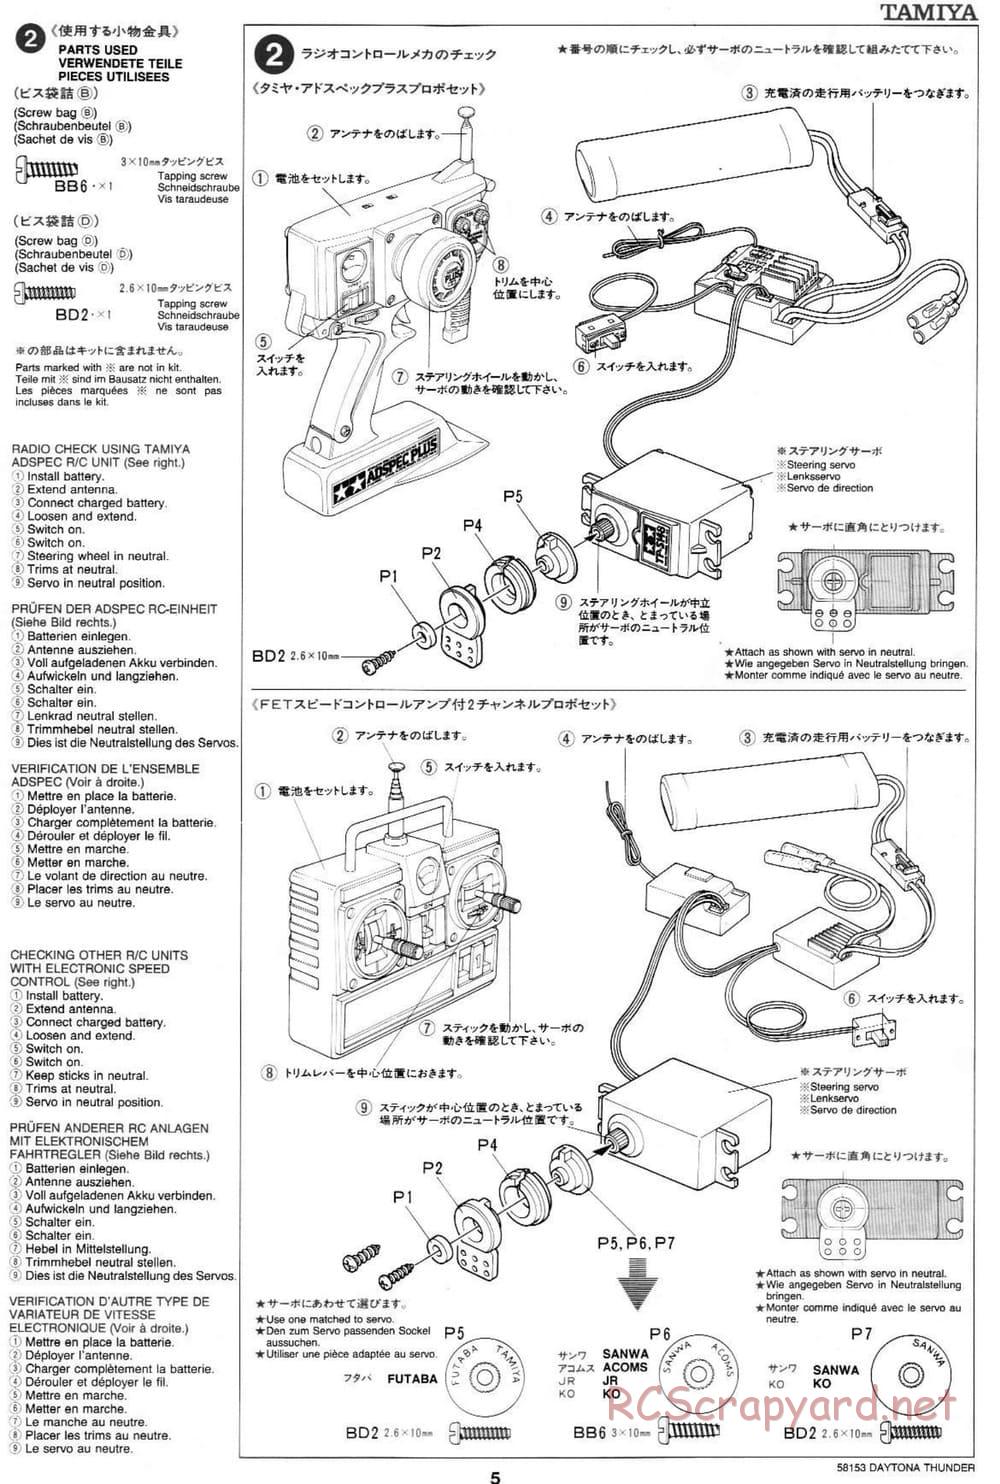 Tamiya - Daytona Thunder - Group-C Chassis - Manual - Page 5